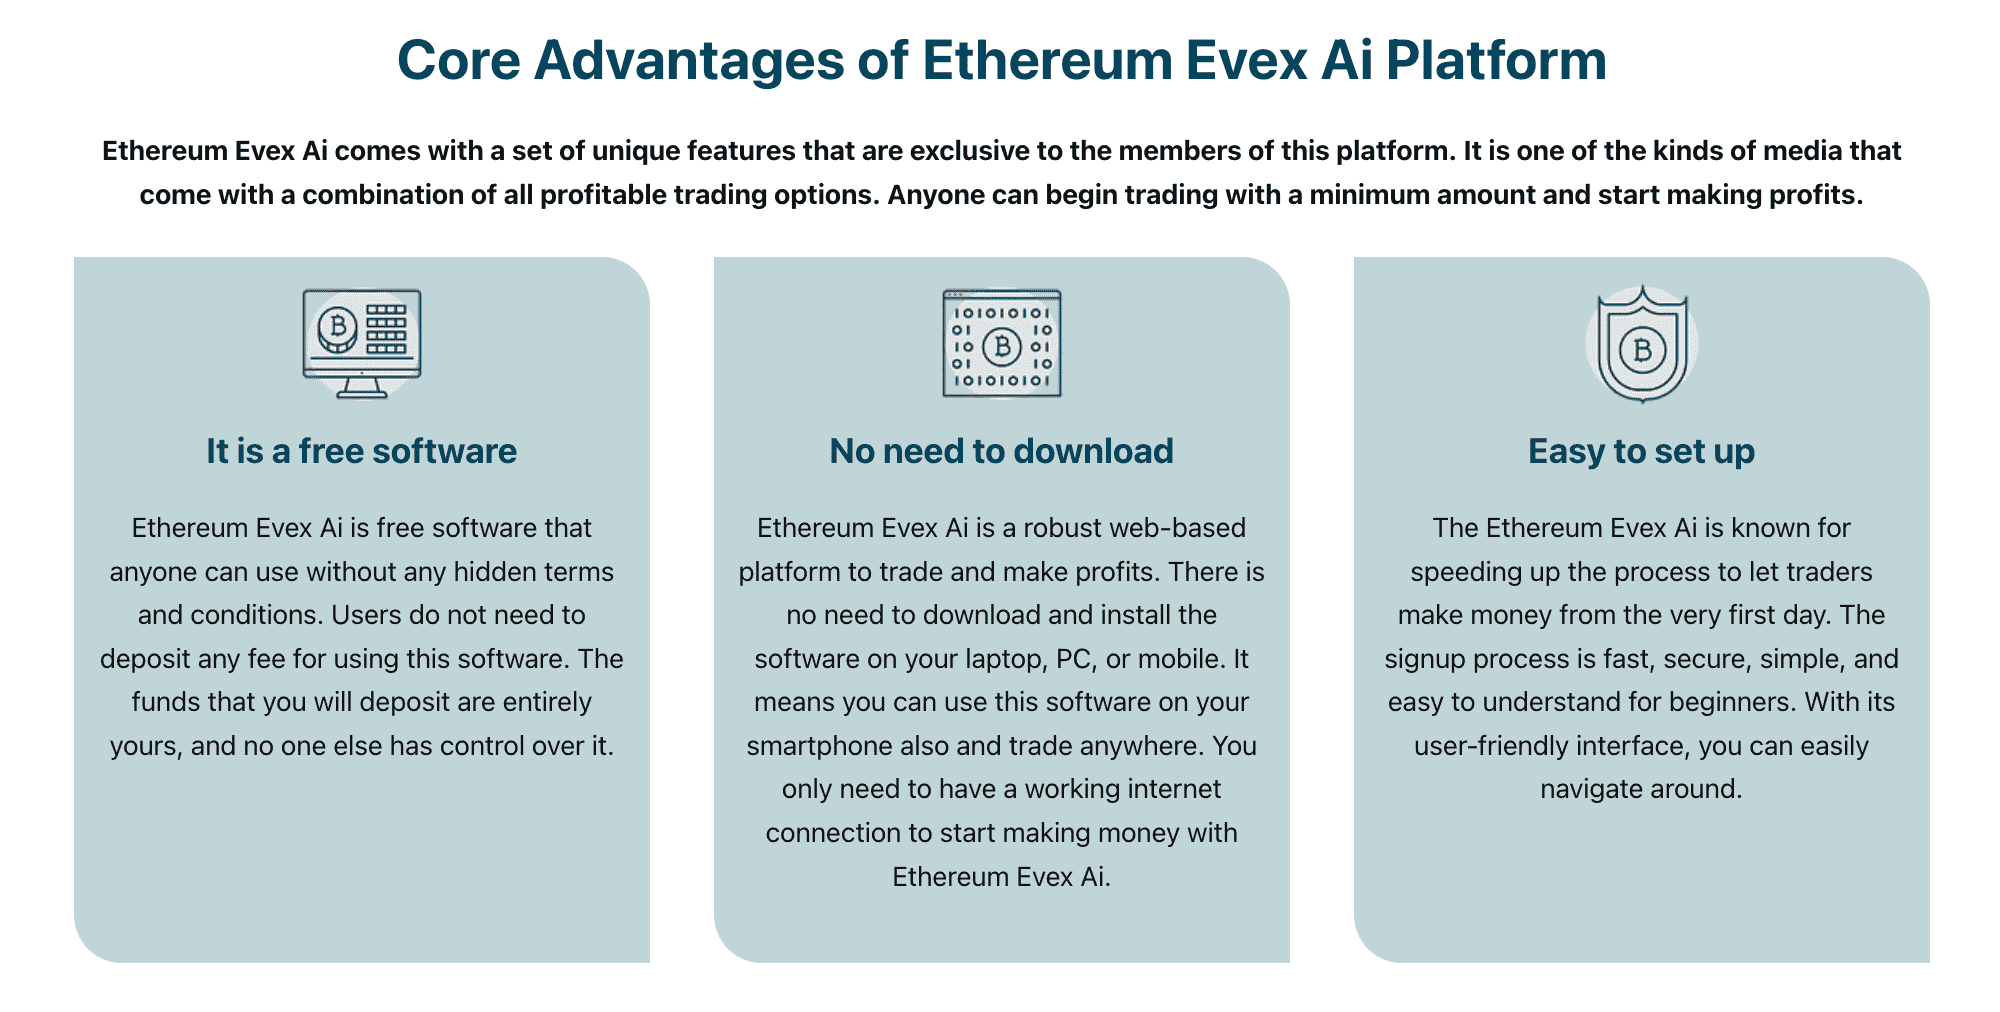 Kernvorteile der Ethereum Evex Ai Plattform  